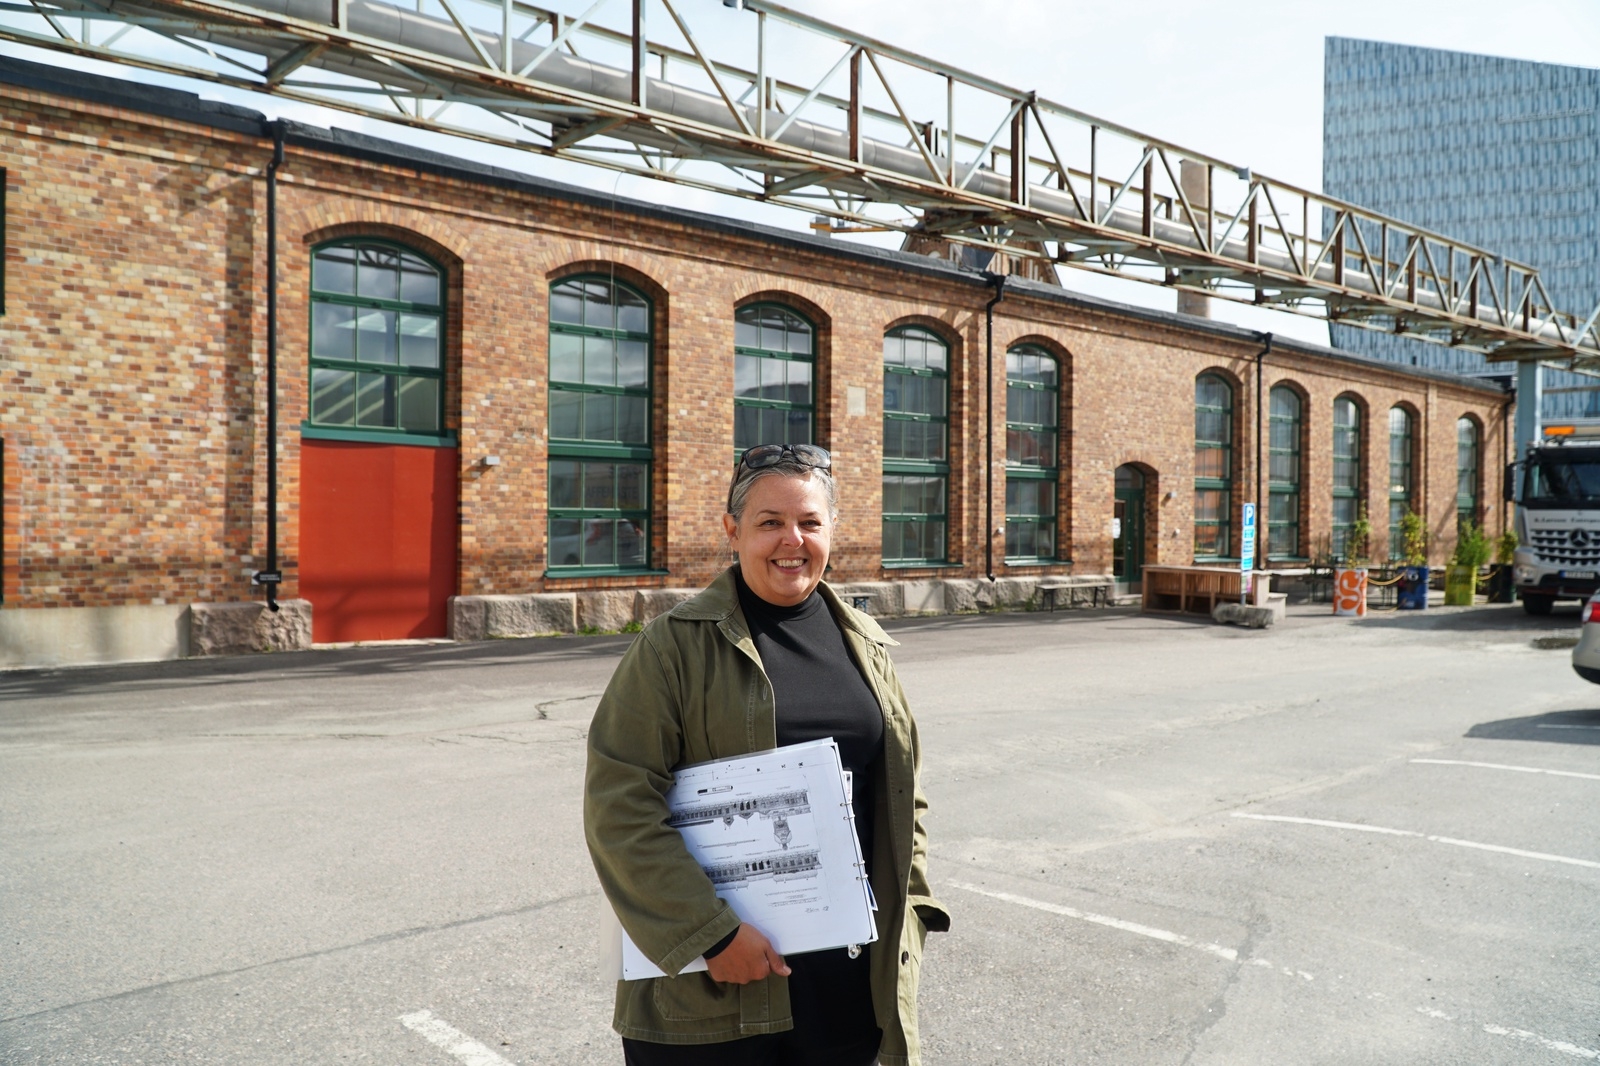 Arkitekten Jenny Ström Hansson från Bollebygd arbetar med omvandlingen av Slakthuset i Gamlestaden i Göteborg. Mikrobryggeriet Spike Brewery ligger i en av de först färdiga byggnaderna.